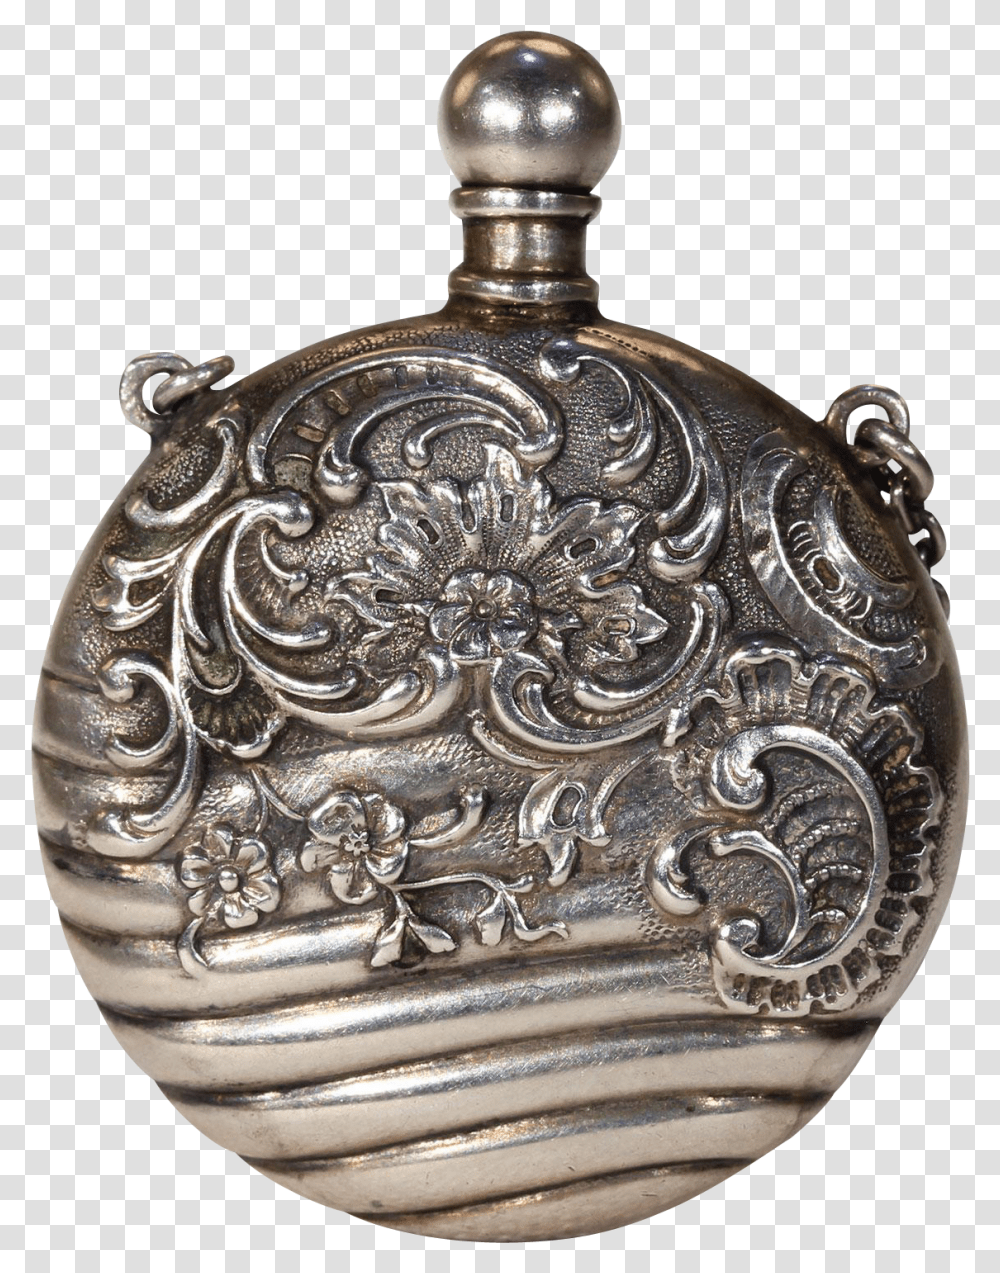 Antique Victorian Decorative Perfume Bottle Pendant Victorian Perfume, Accessories, Accessory, Jewelry, Locket Transparent Png